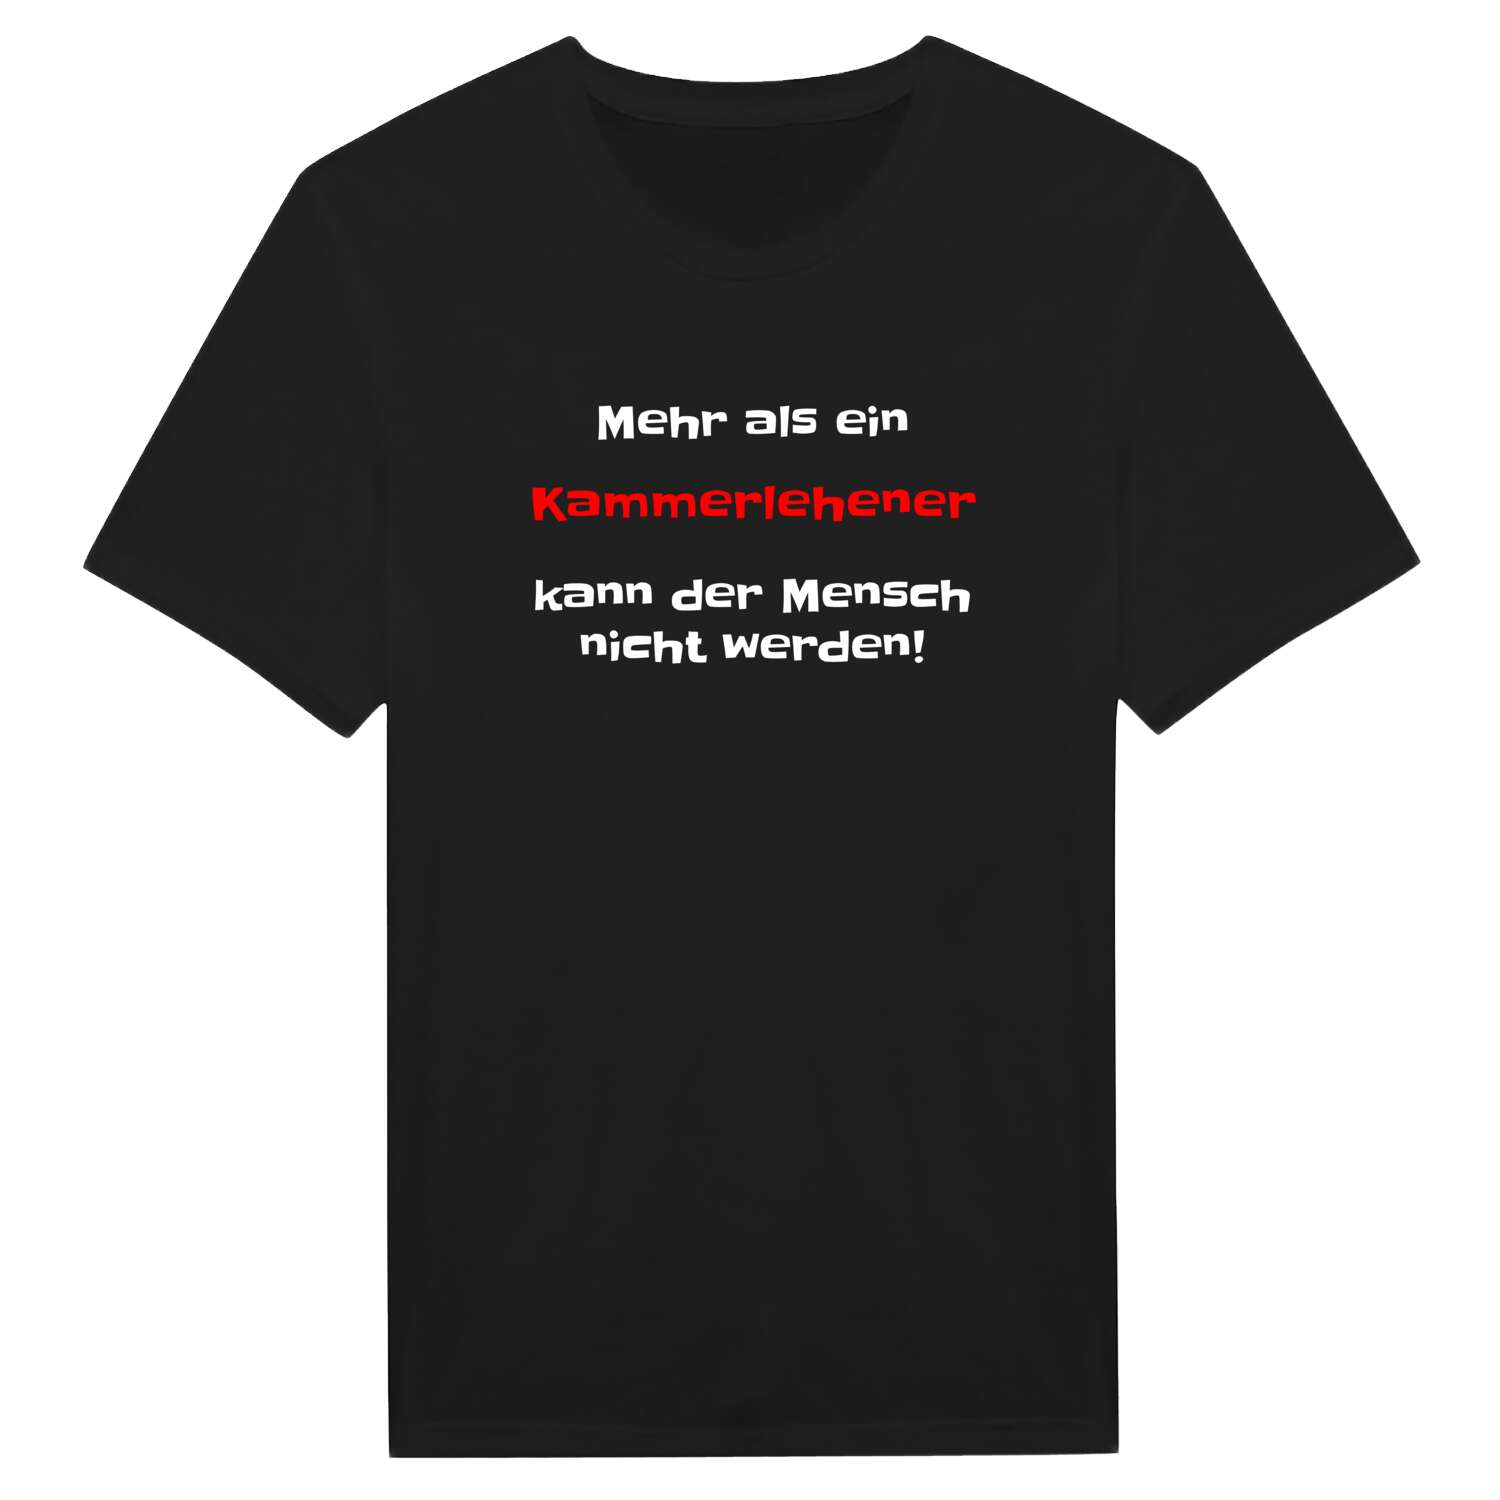 Kammerlehen T-Shirt »Mehr als ein«